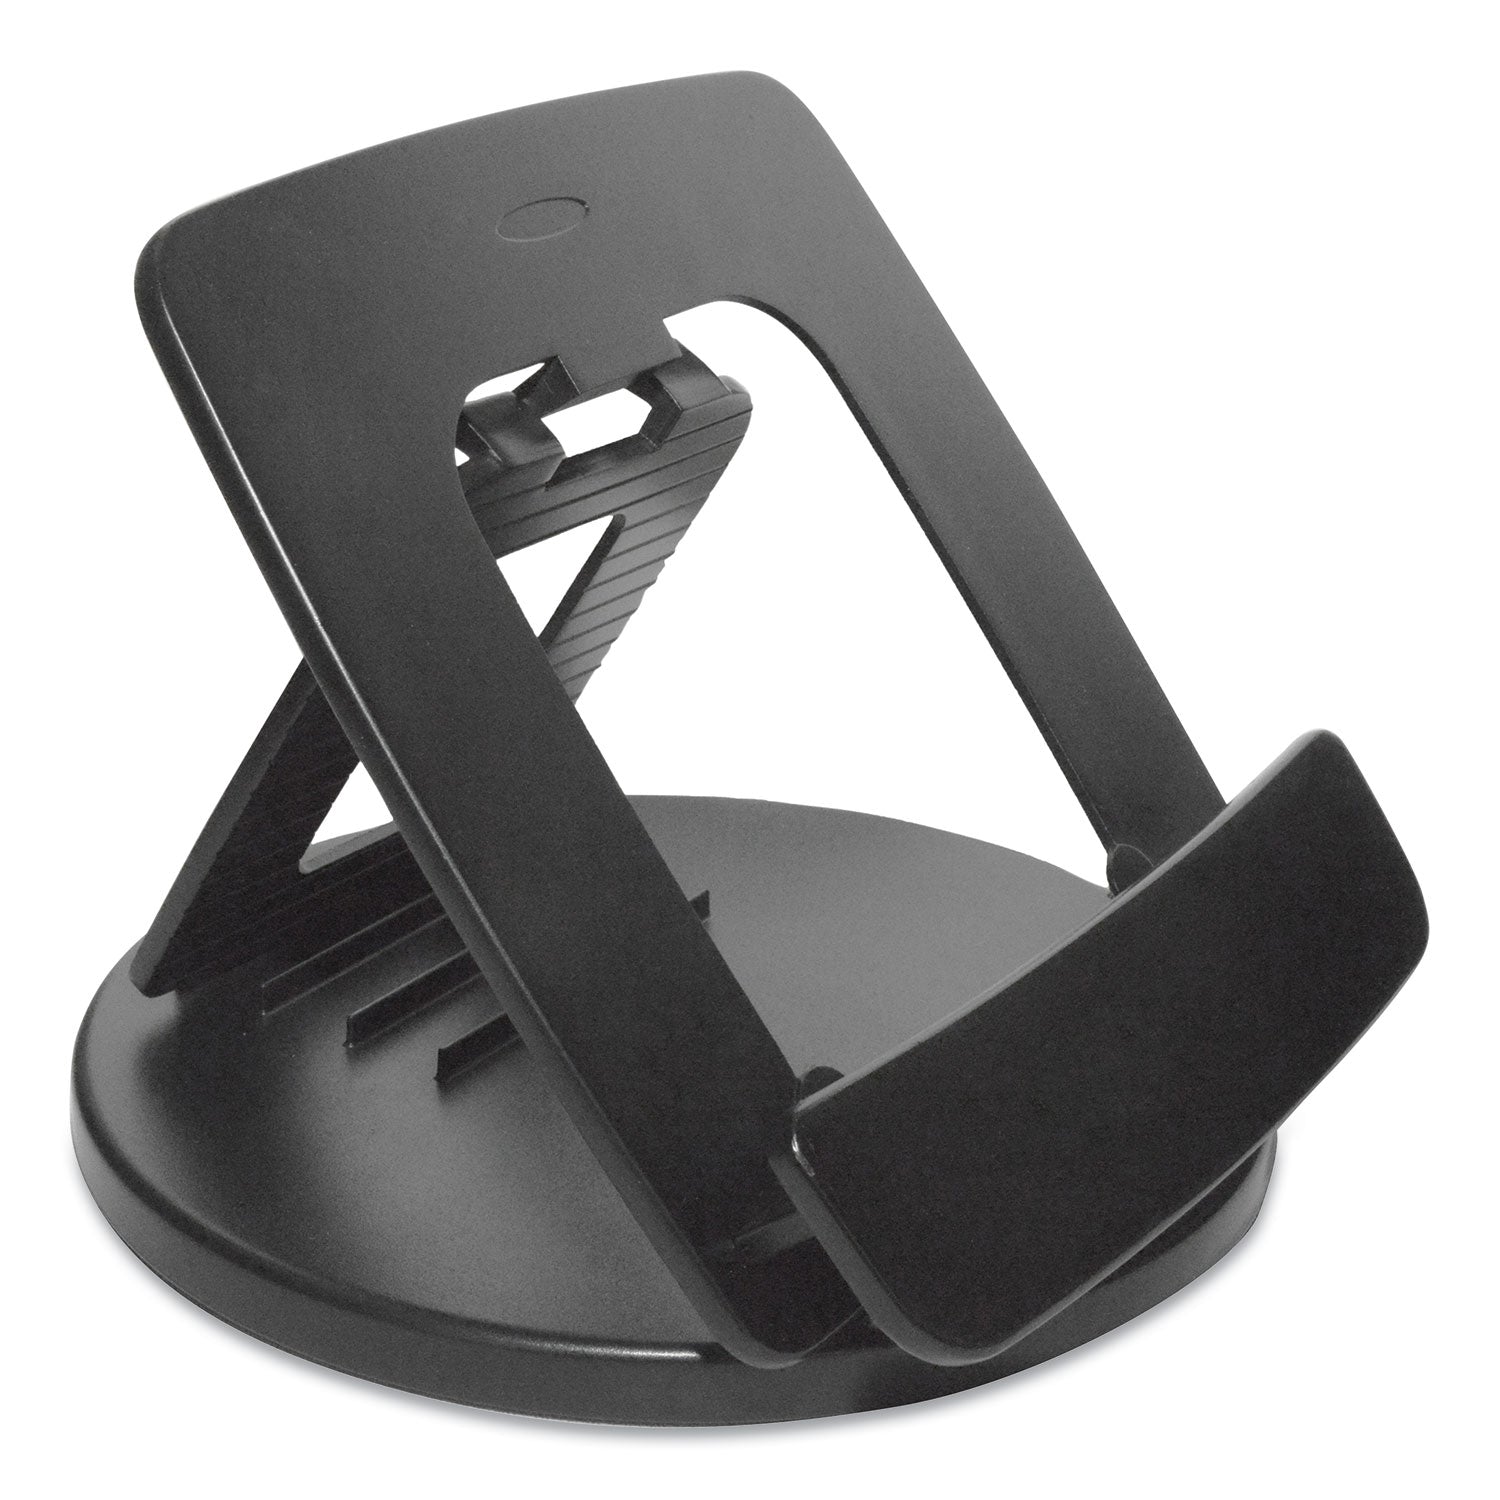 Rotating Desktop Tablet Stand, Black - 